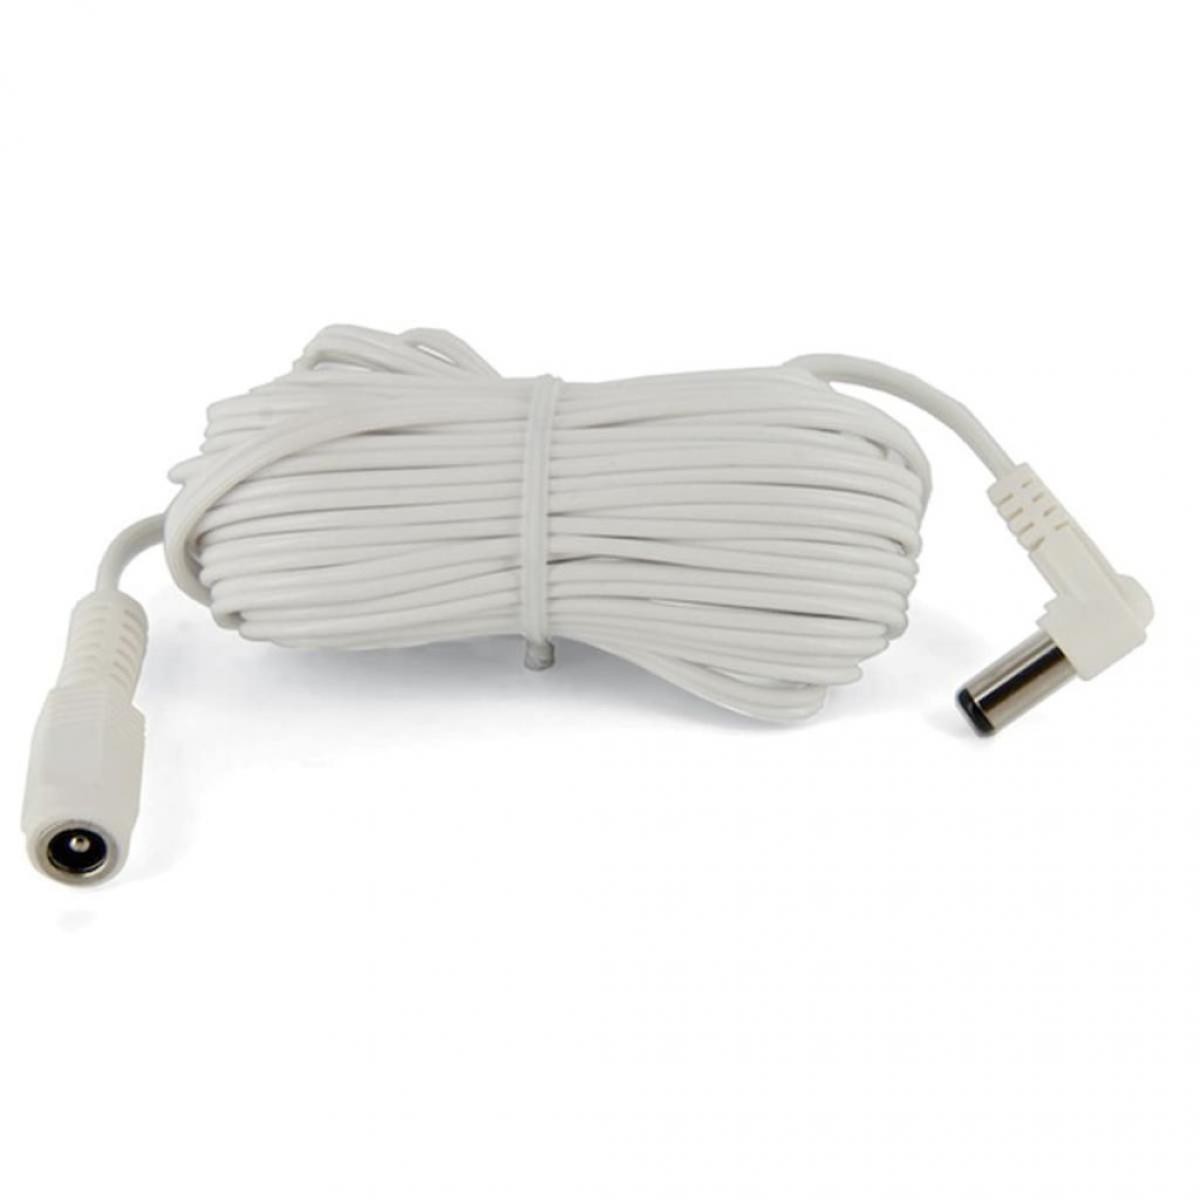 Petsafe - PetSafe Câble d'extension pour Microchip Petporte 5 m Blanc PAC19-12598 - Chatière